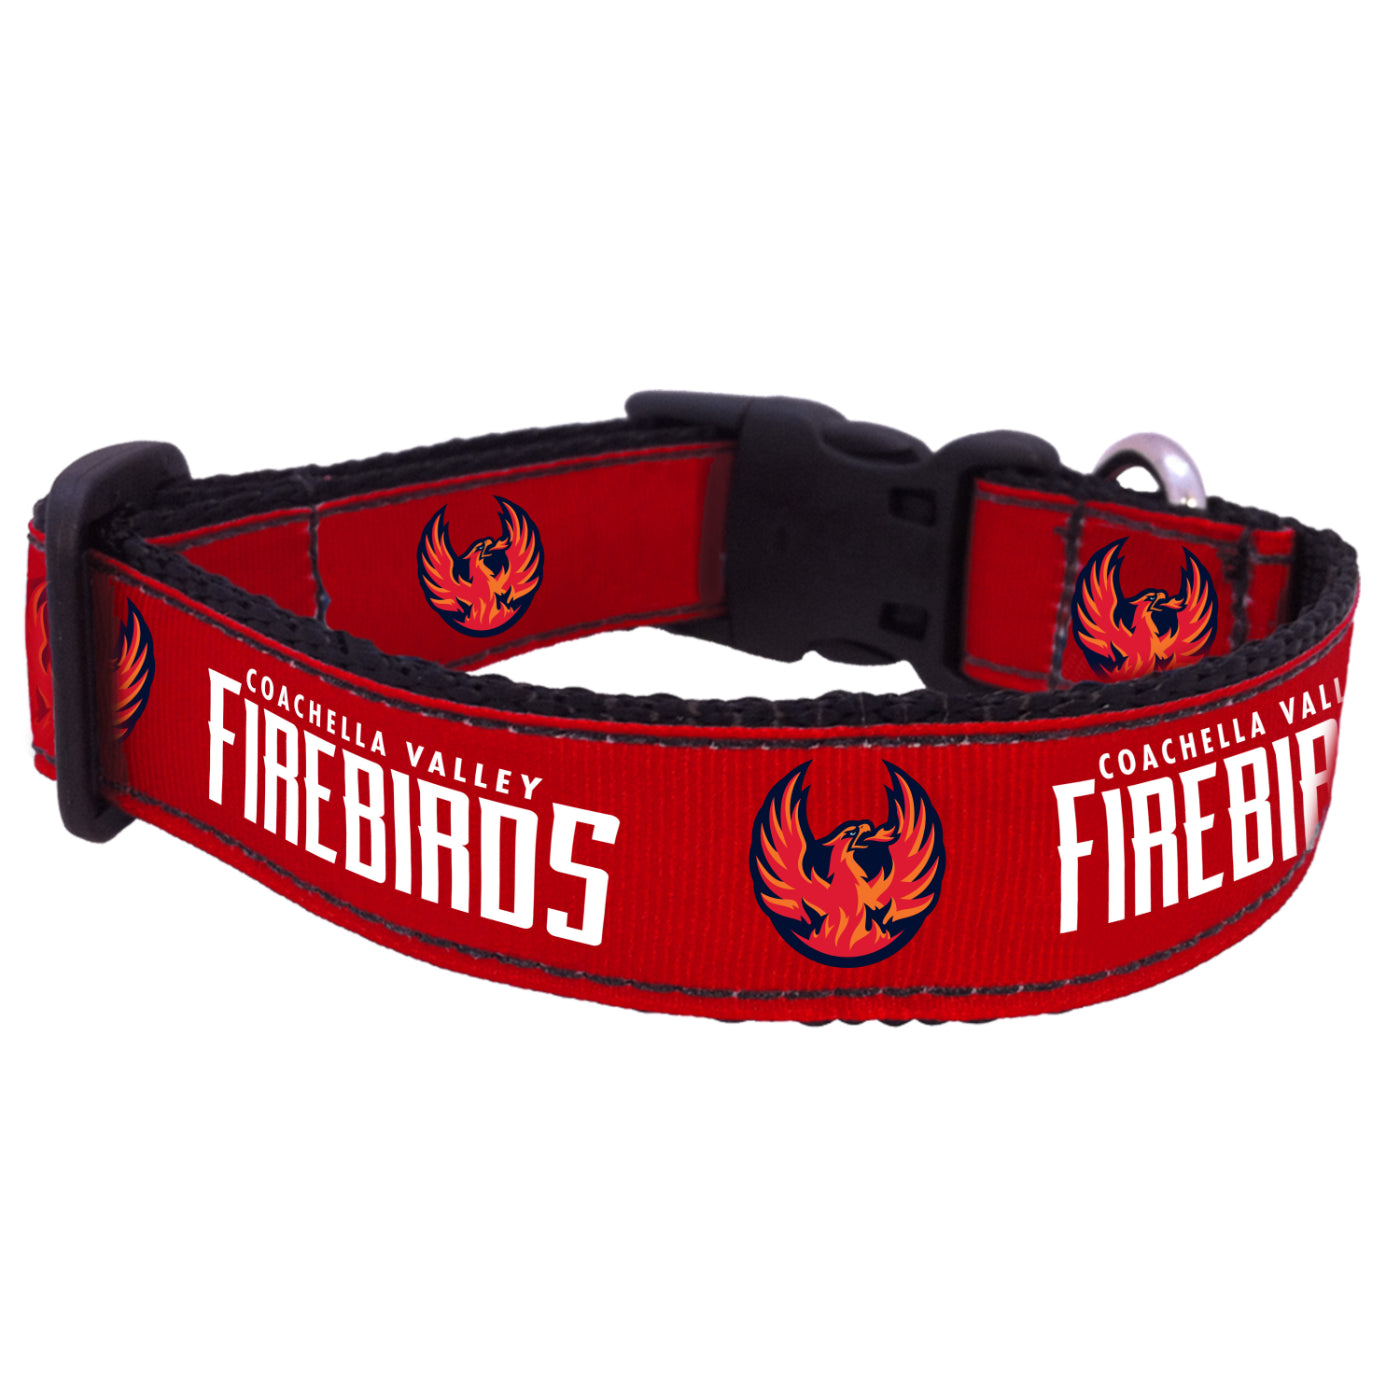 Coachella Valley Firebirds Dog Collar